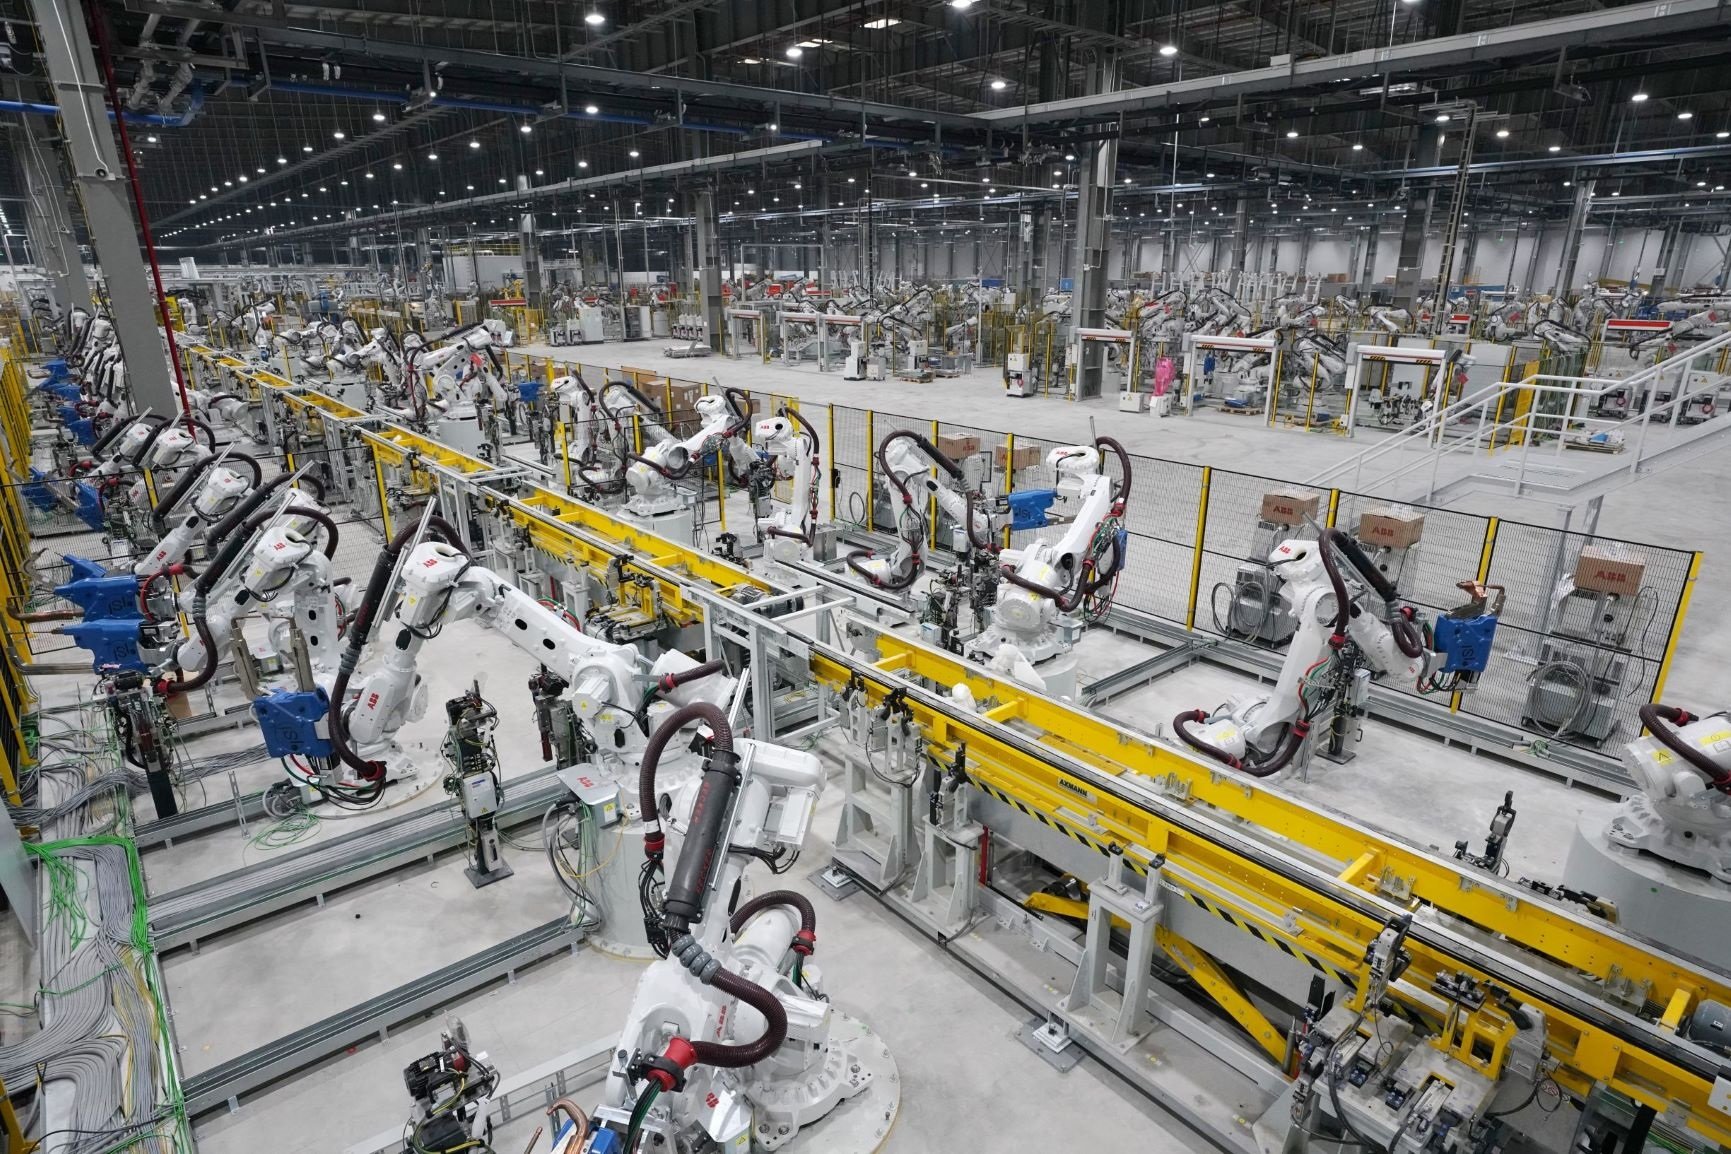 Nhà máy ô tô VinFast được trang bị hệ thống máy móc, trang thiết bị hiện đại, mức độ tự động hóa cao với hàng nghìn robot.